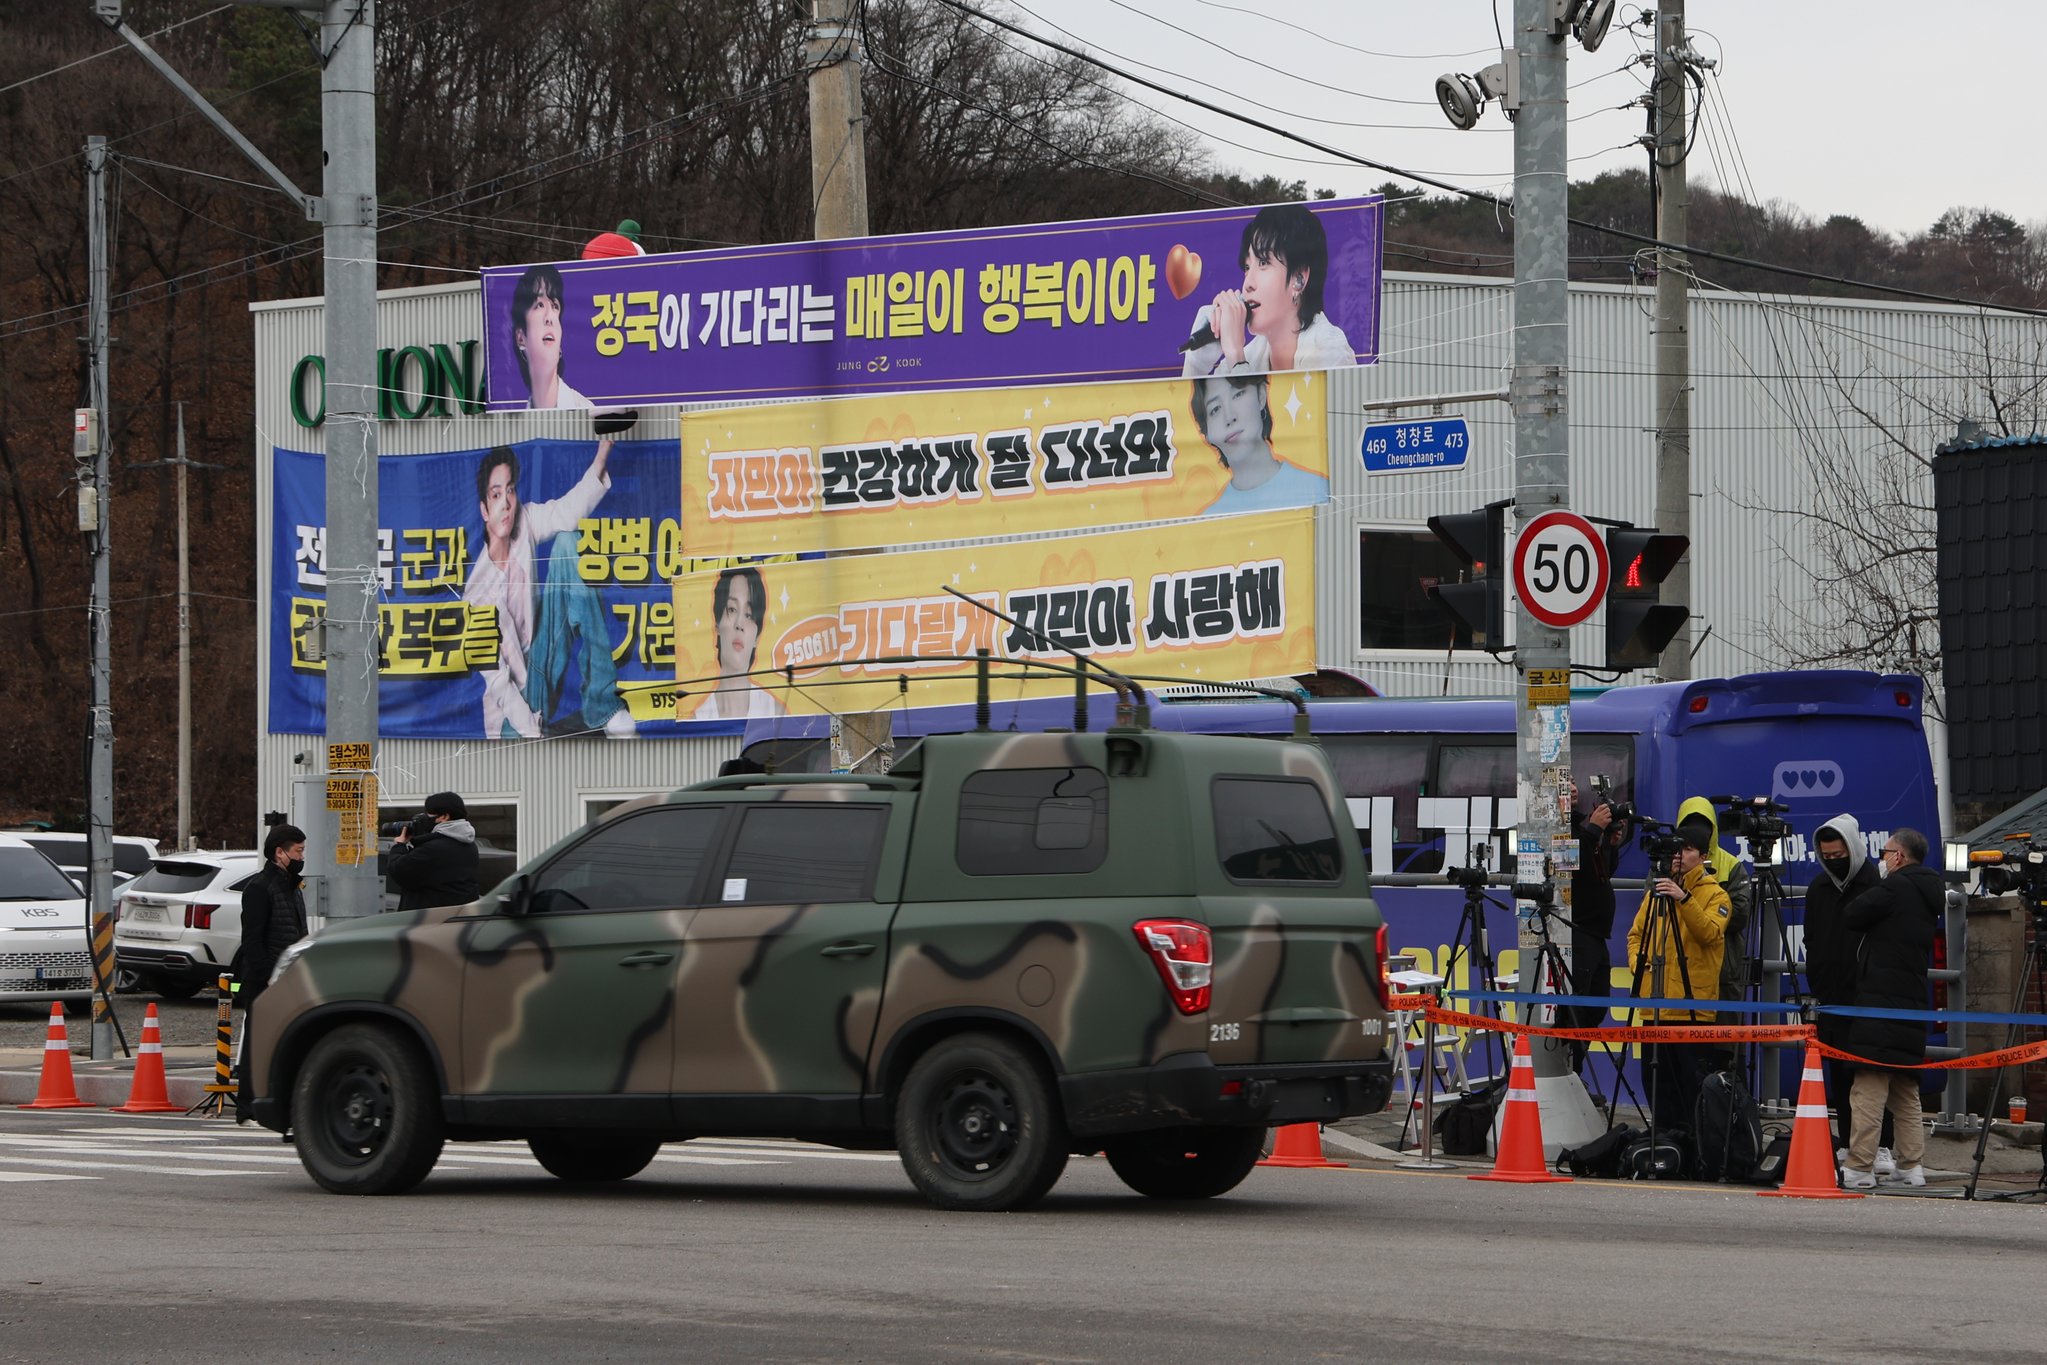 12일 경기도 연천군 육군 5사단 신병교육대 인근에 BTS 팬들의 응원 플래카드가 걸려 있다. 연합뉴스